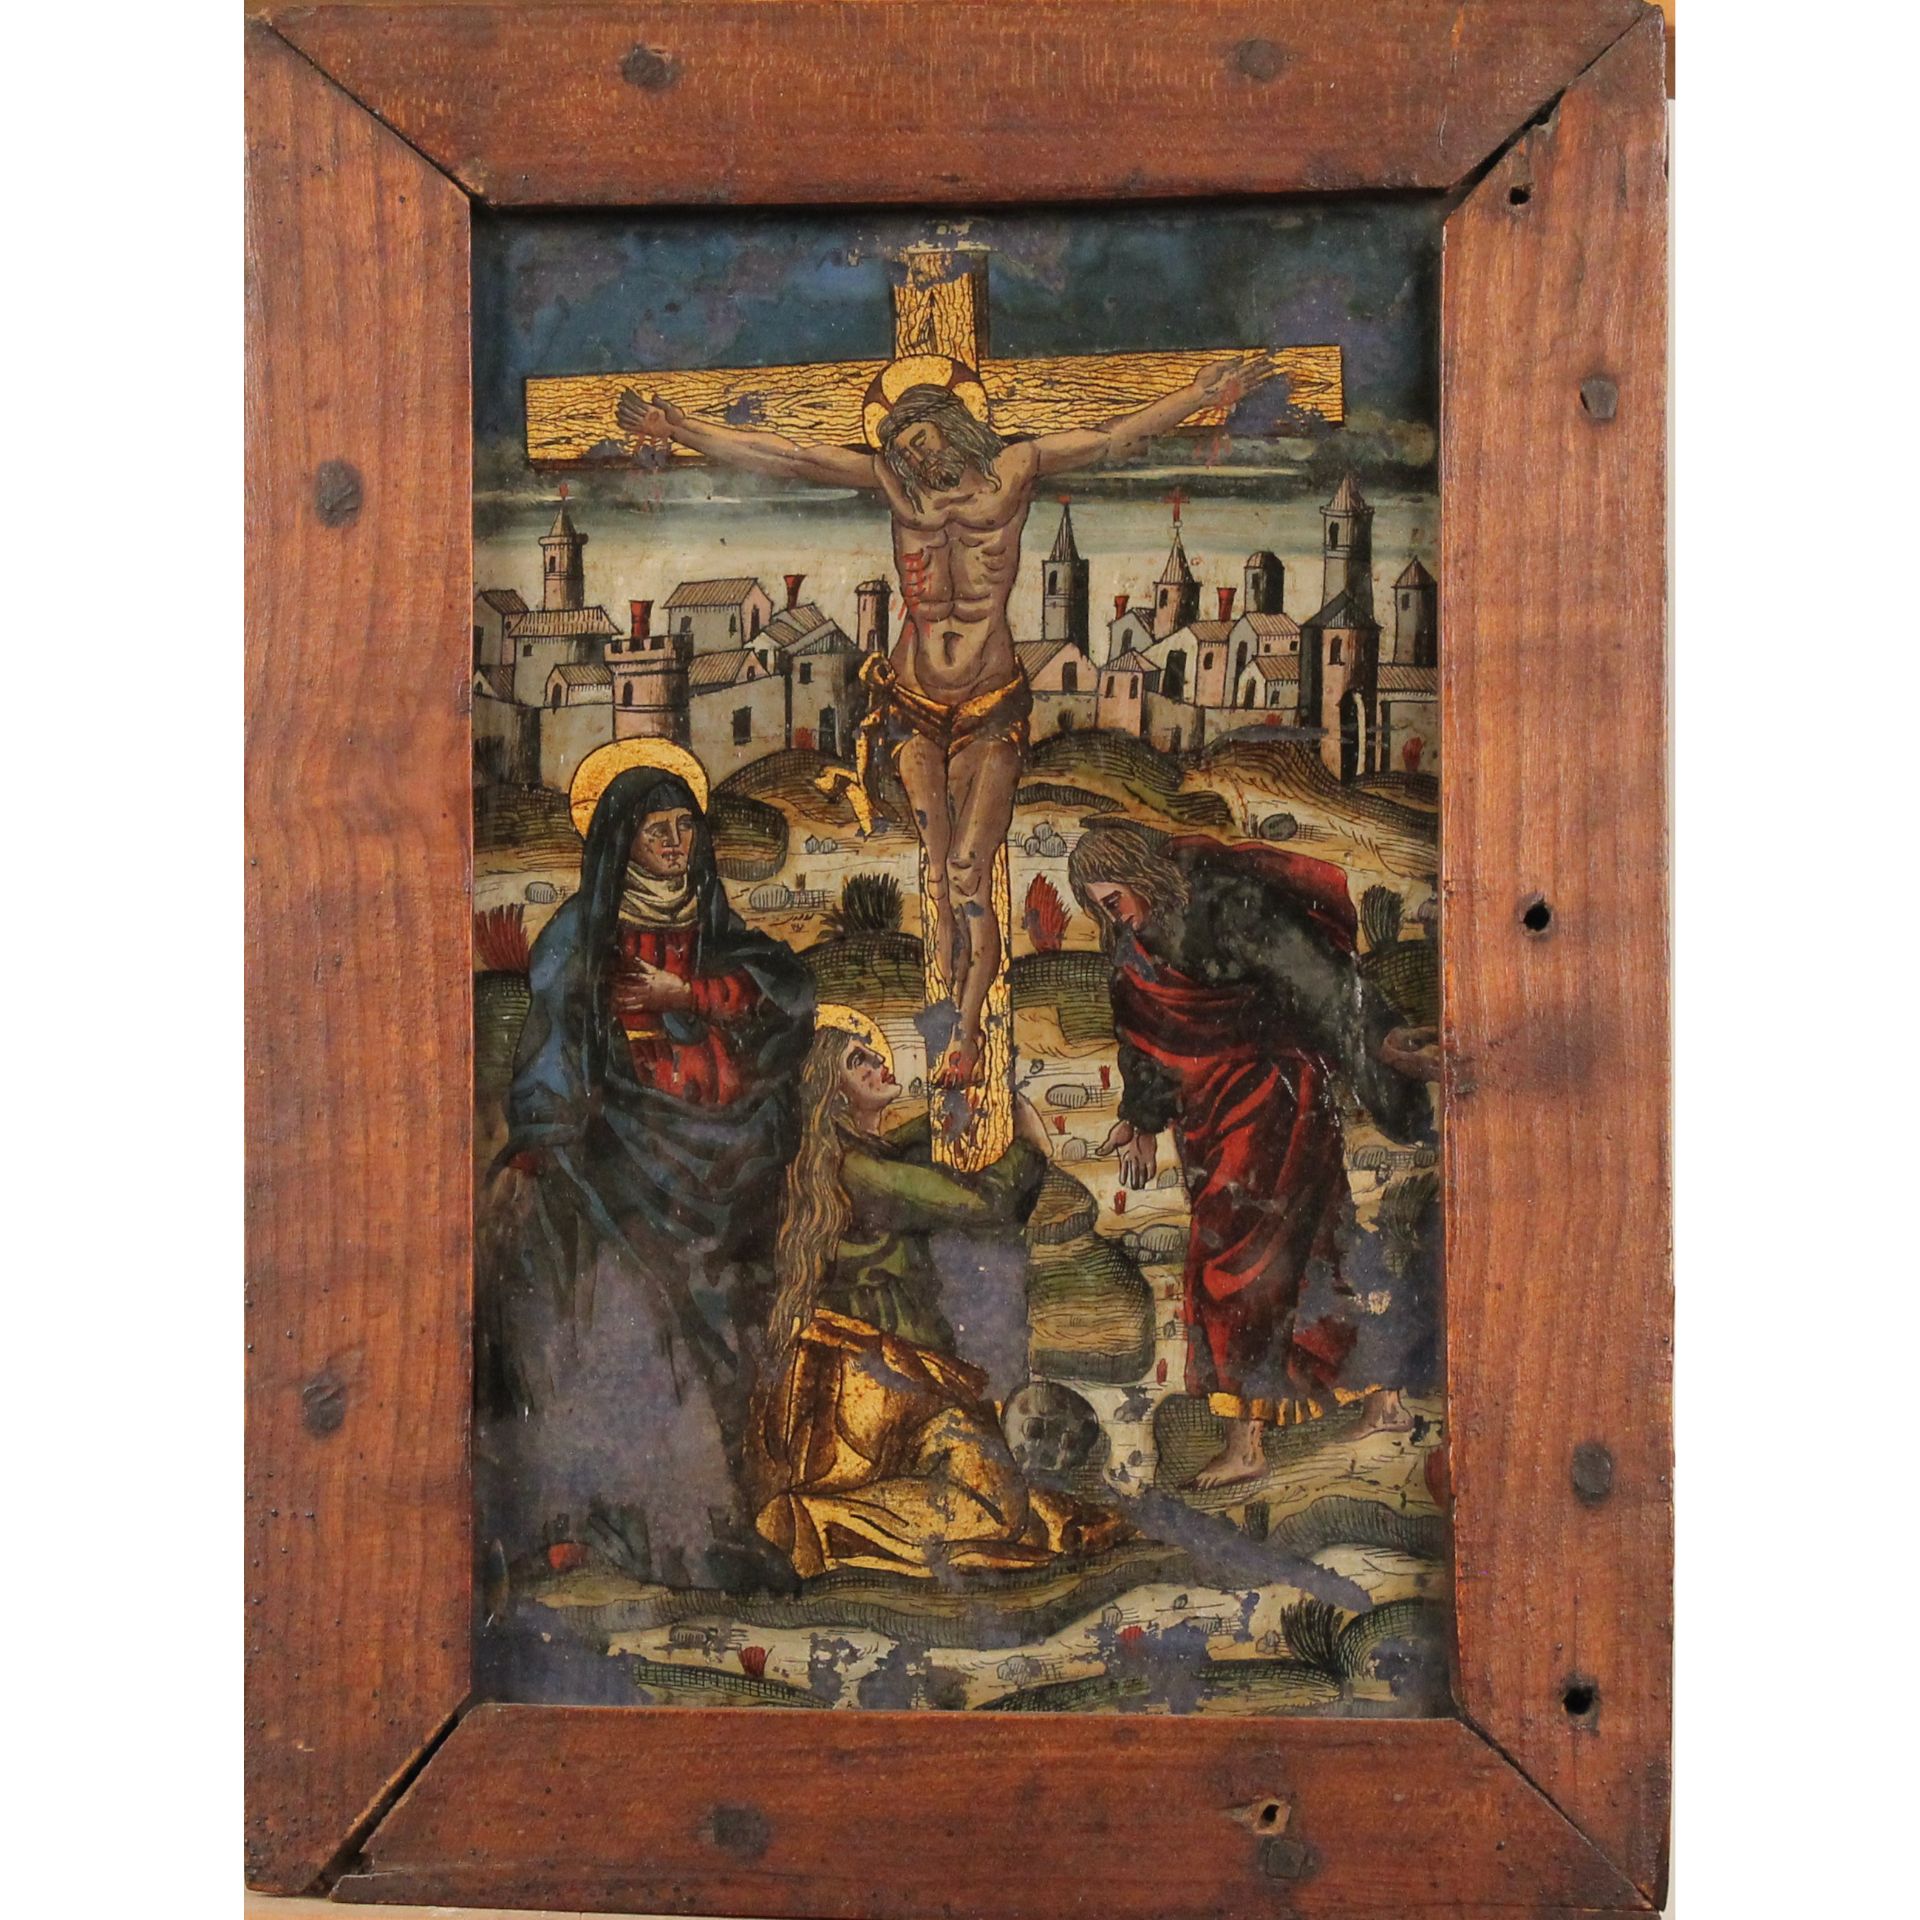 Scuola veneta del secolo XVI "Crocifissione" - Venetian school of the 16th century "Crucifixion" - Image 2 of 3